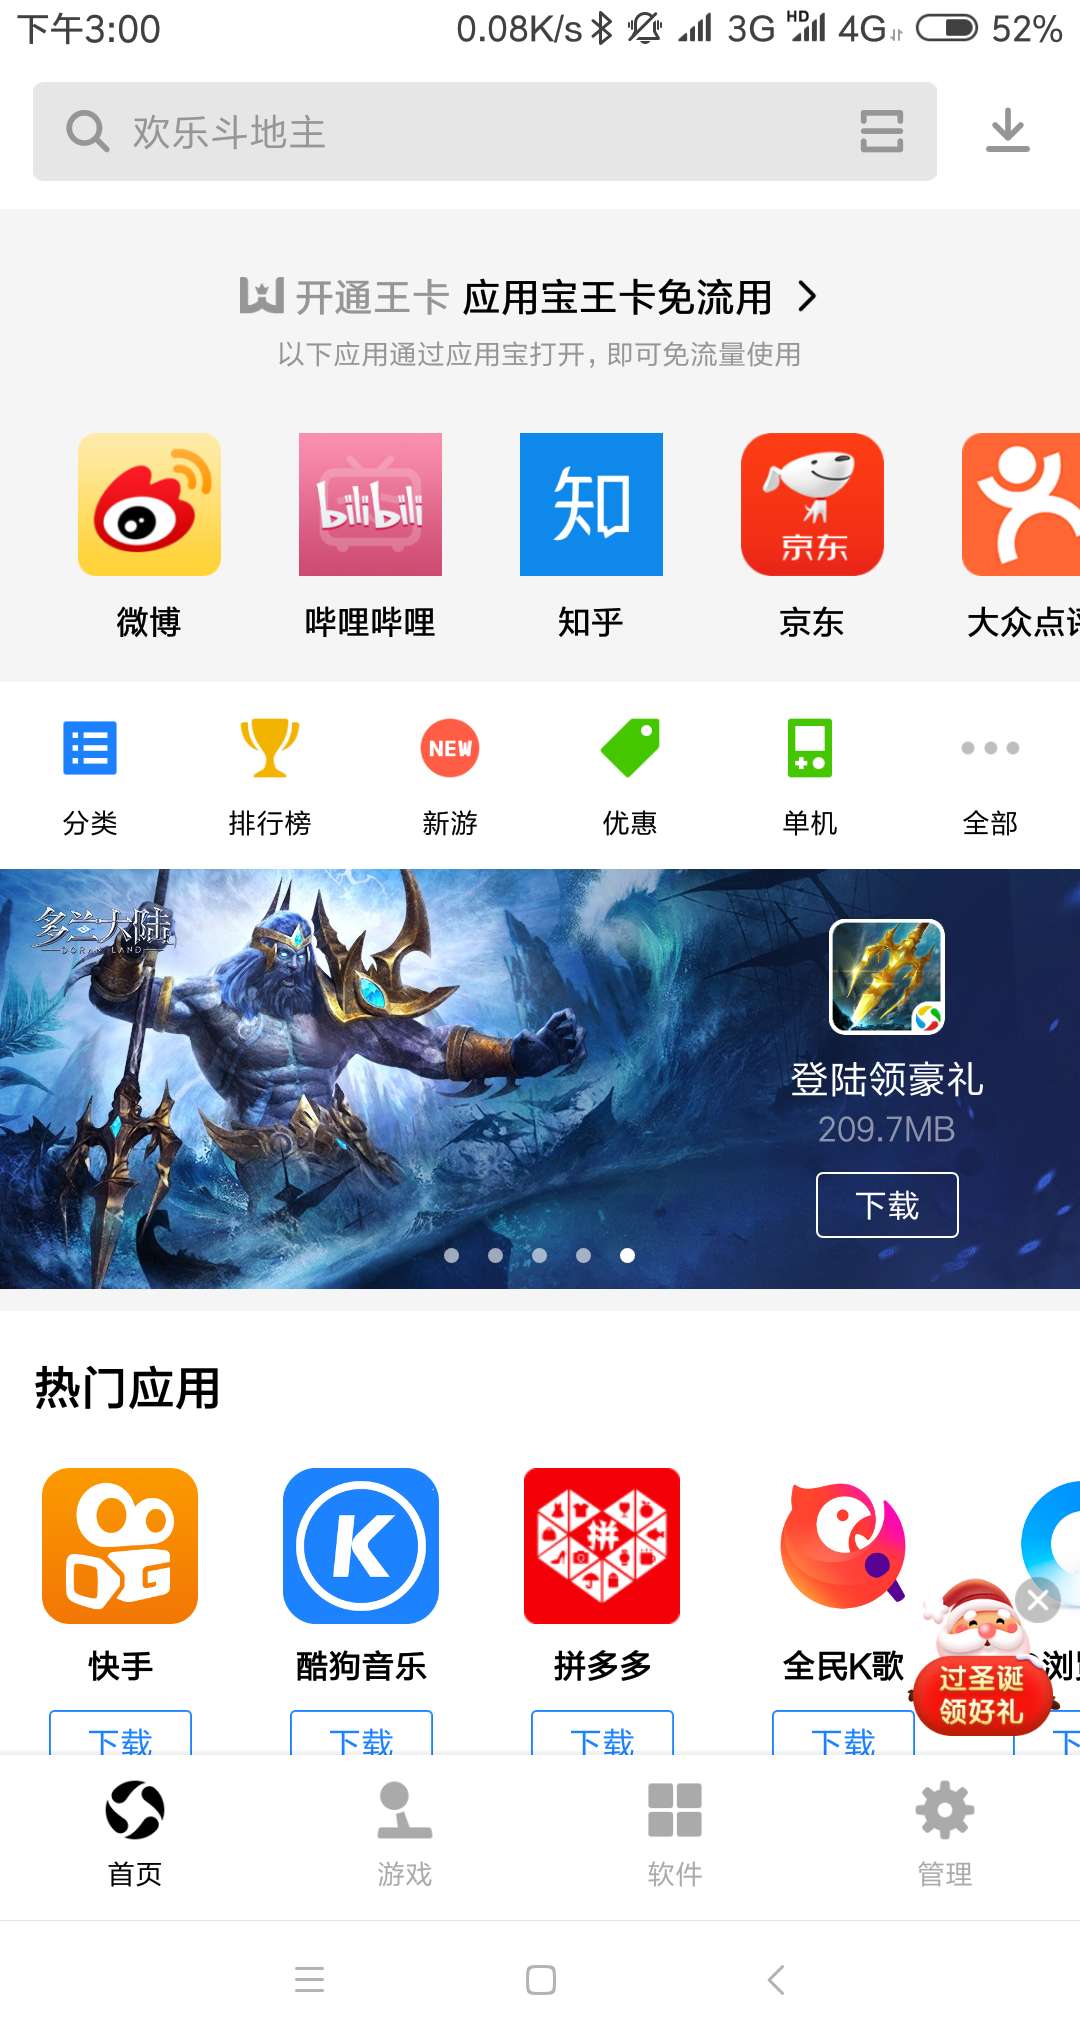 腾讯王卡免流应用升级:b站京东等30款app均免流,但有